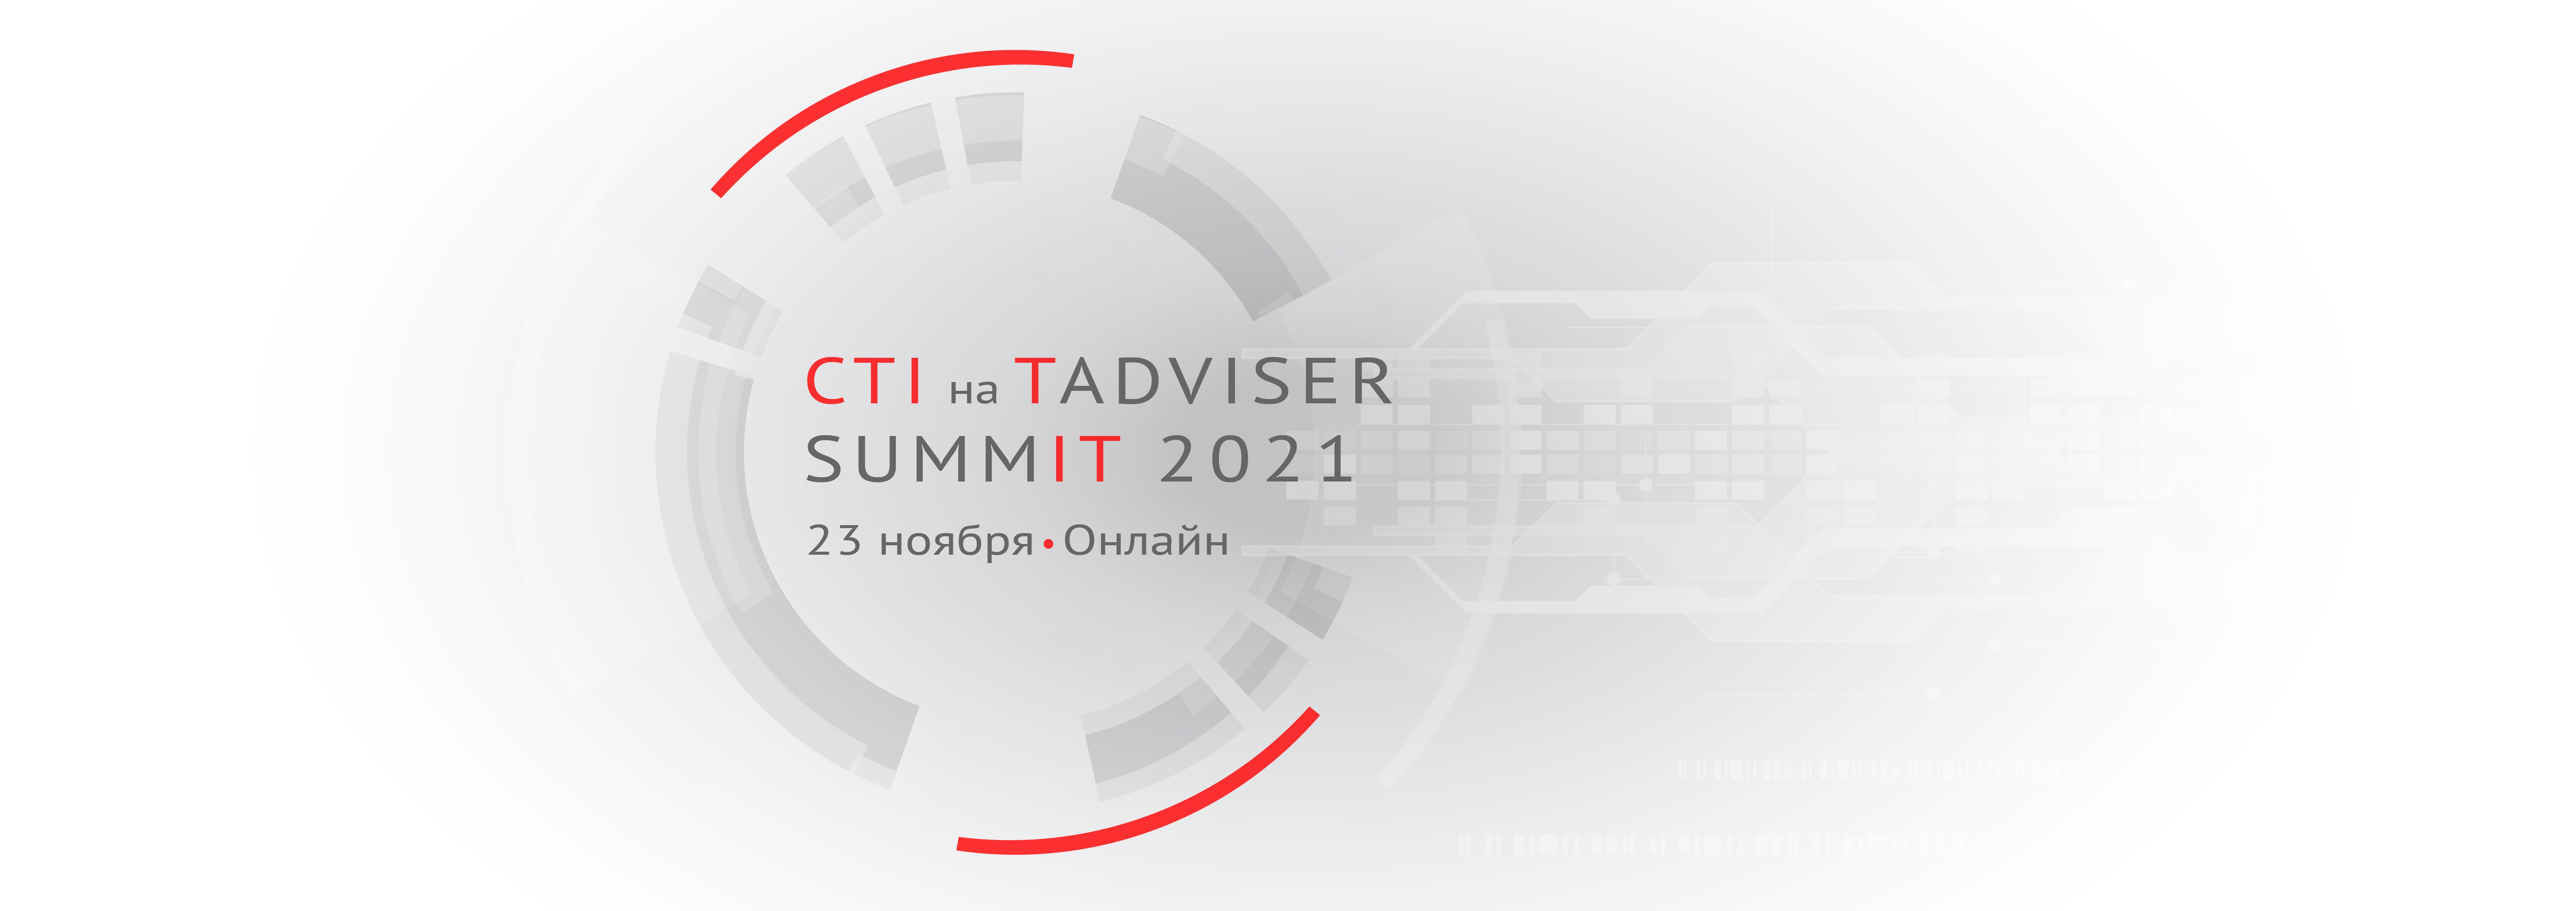 Интеграторы красноярска. TADVISER Summit 2021. Логотип CTI - communications. Technology. Innovations.. TADVISER logo.